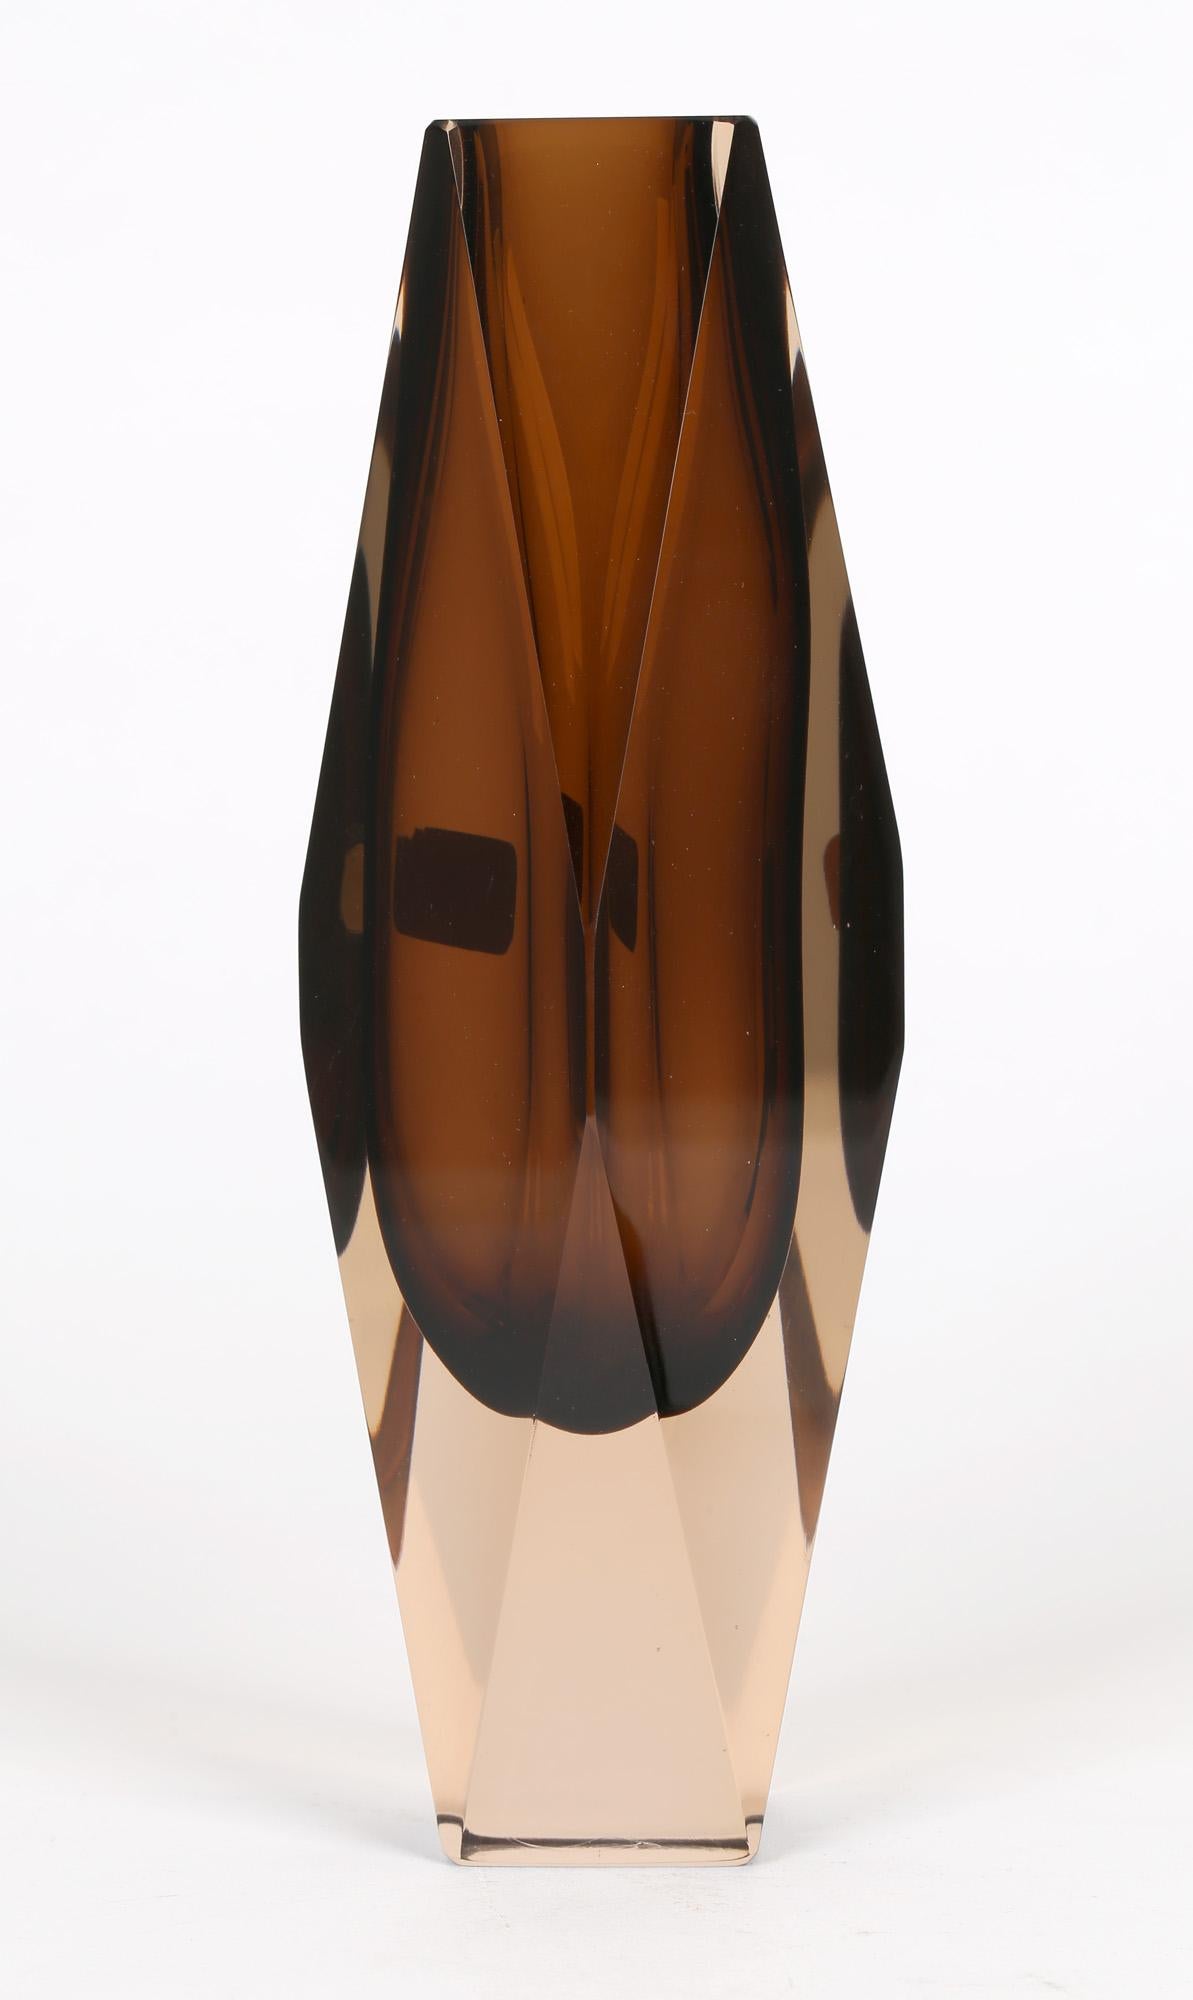 V Nason & C Murano Cinnamon Sommerso Faceted Art Glass Vase 1